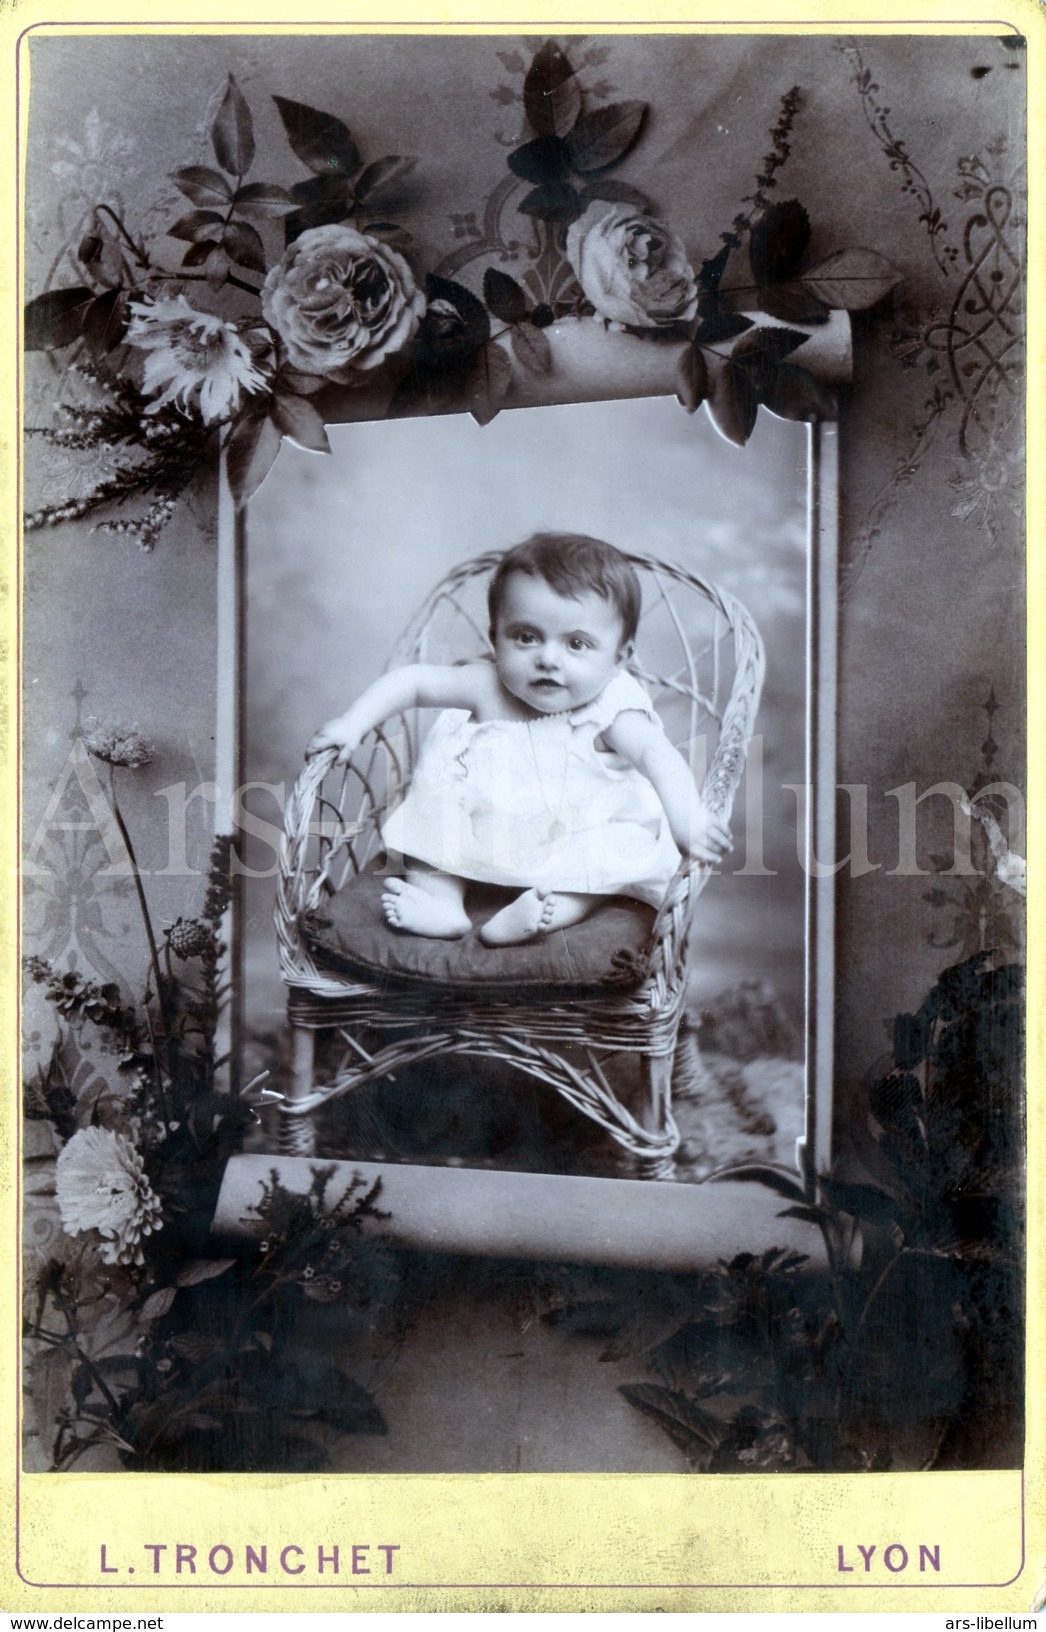 Cabinet Card / Photo De Cabinet / Kabinet Foto / Enfant / Child / Boy / Garçon / L. Tronchet / Lyon / France - Anciennes (Av. 1900)